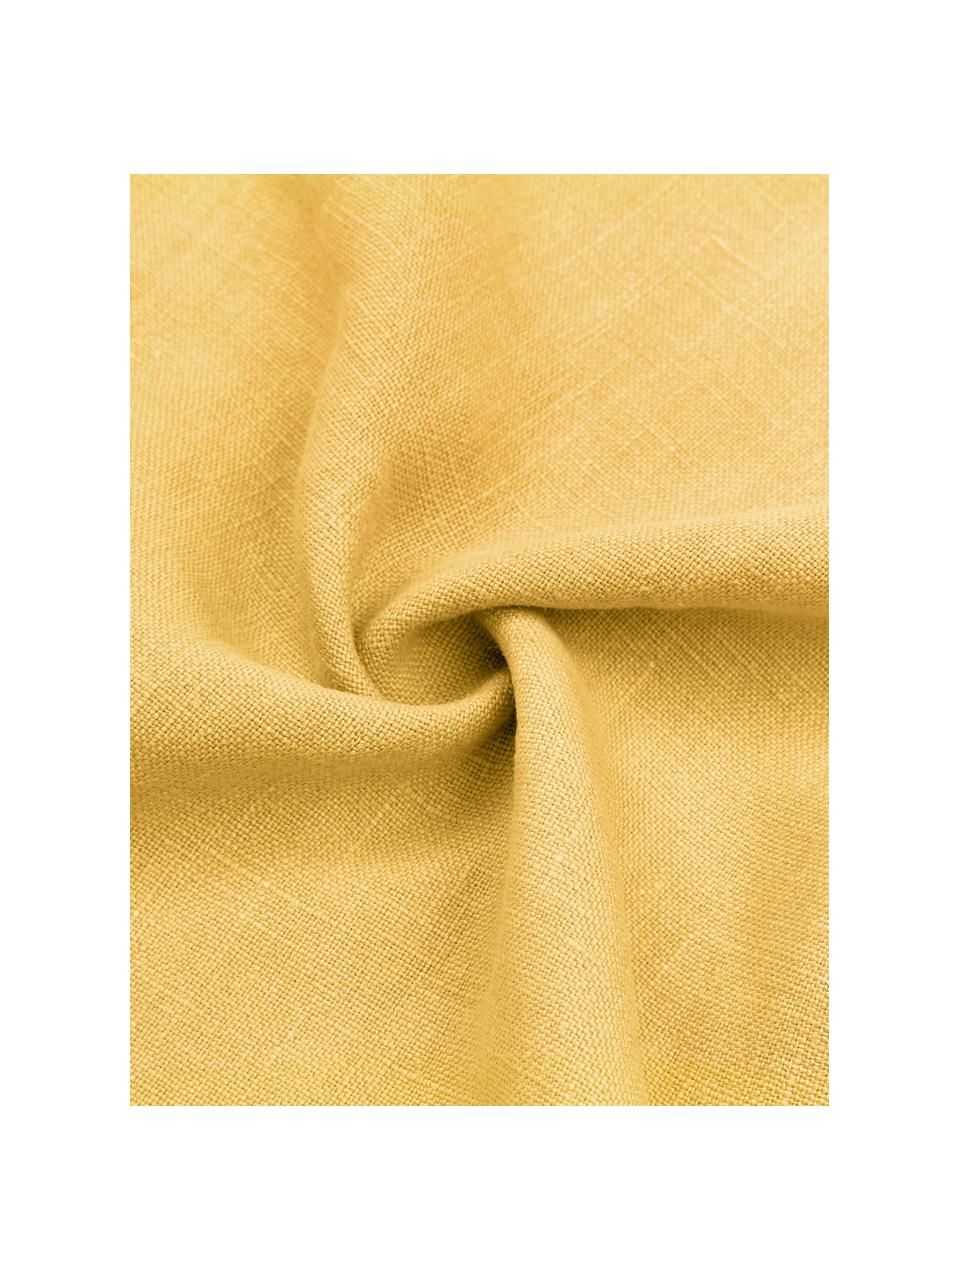 Linnen kussenhoes Luana in geel met franjes, 100% linnen

Linnen voelt van nature ruw aan en heeft een natuurlijke gekreukte uitstraling.
De hoge scheurvastheid maakt linnen slijtvast en slijtvast., Geel, B 30 x L 50 cm